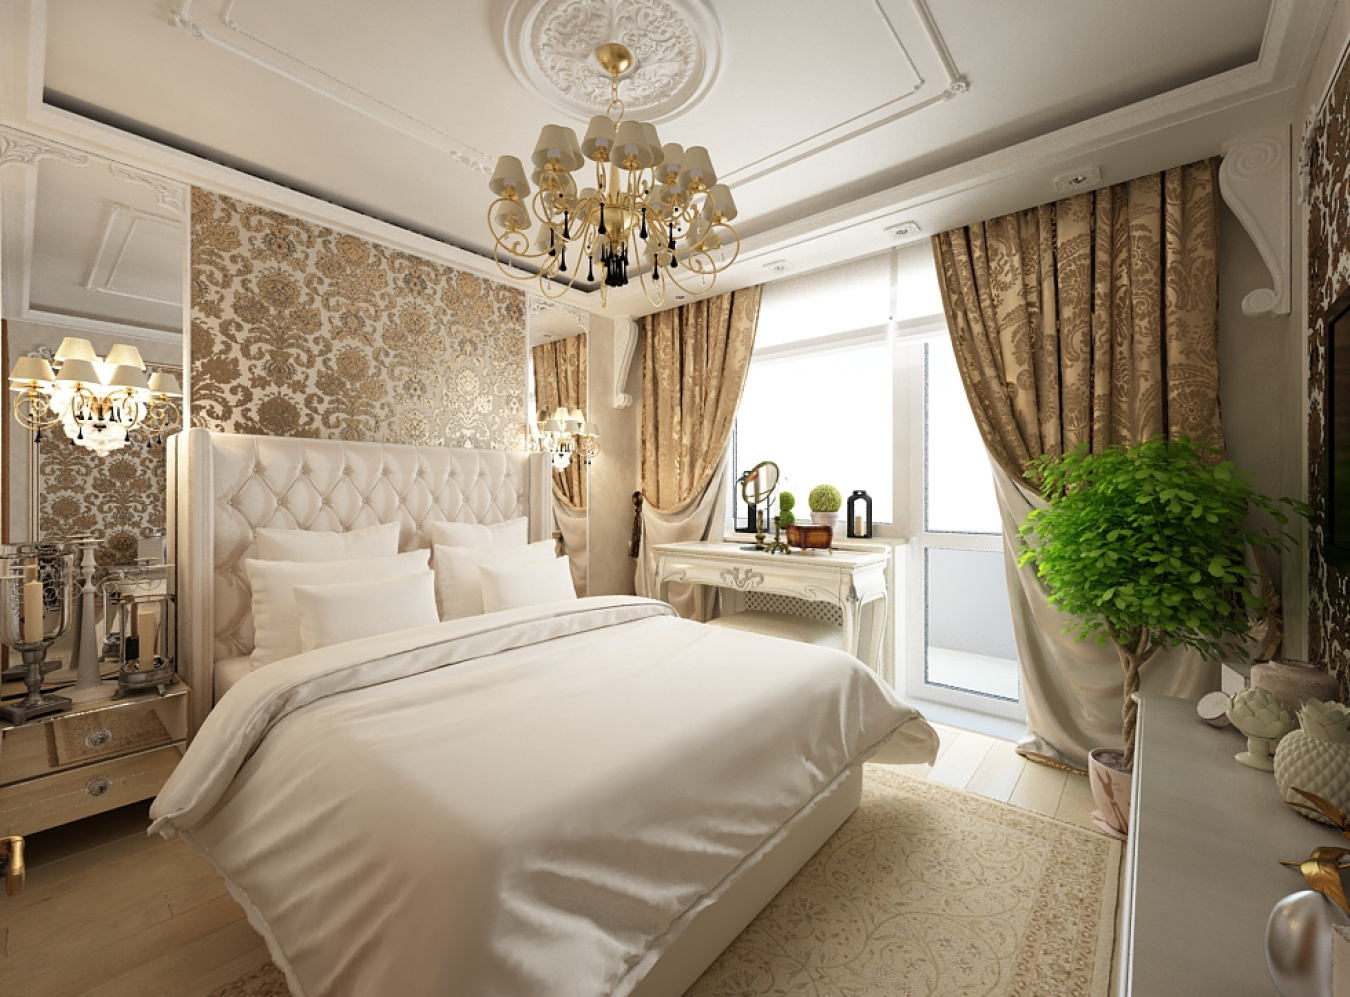 الصورة الكلاسيكية تصميم غرفة النوم